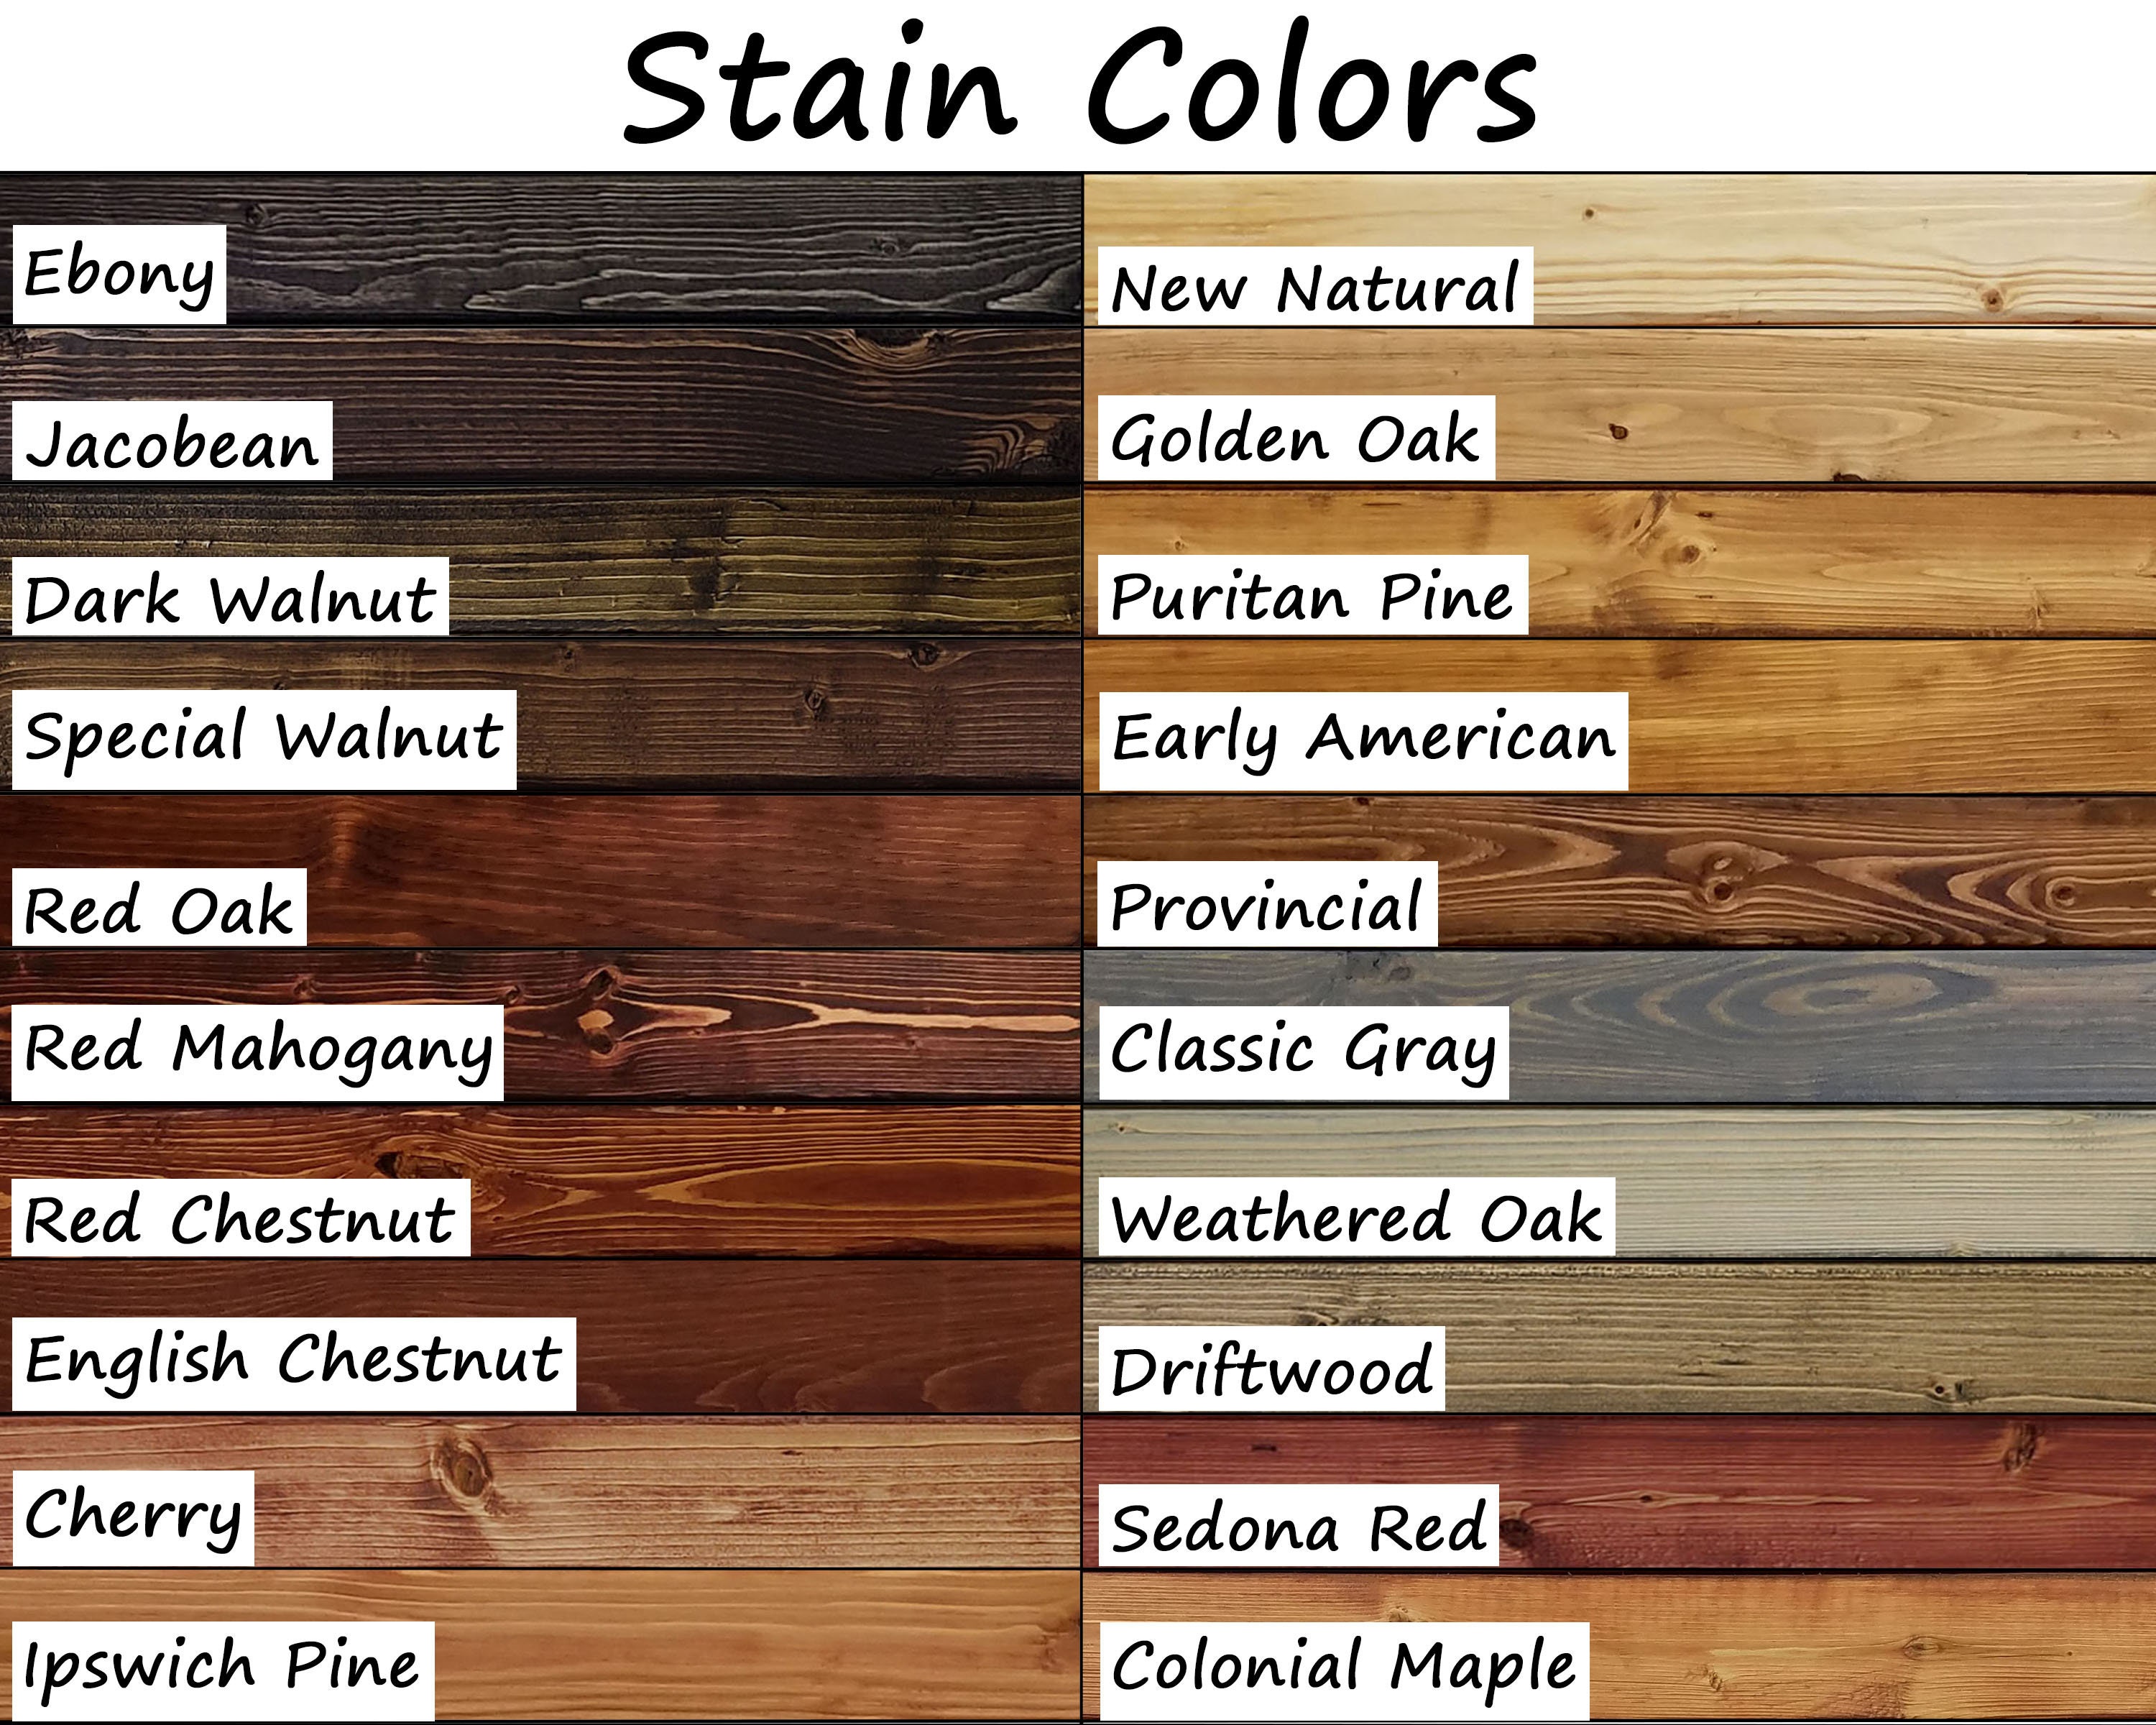 Board & Batten Shutters - 20 Stain Colors, Shown in Special Walnut